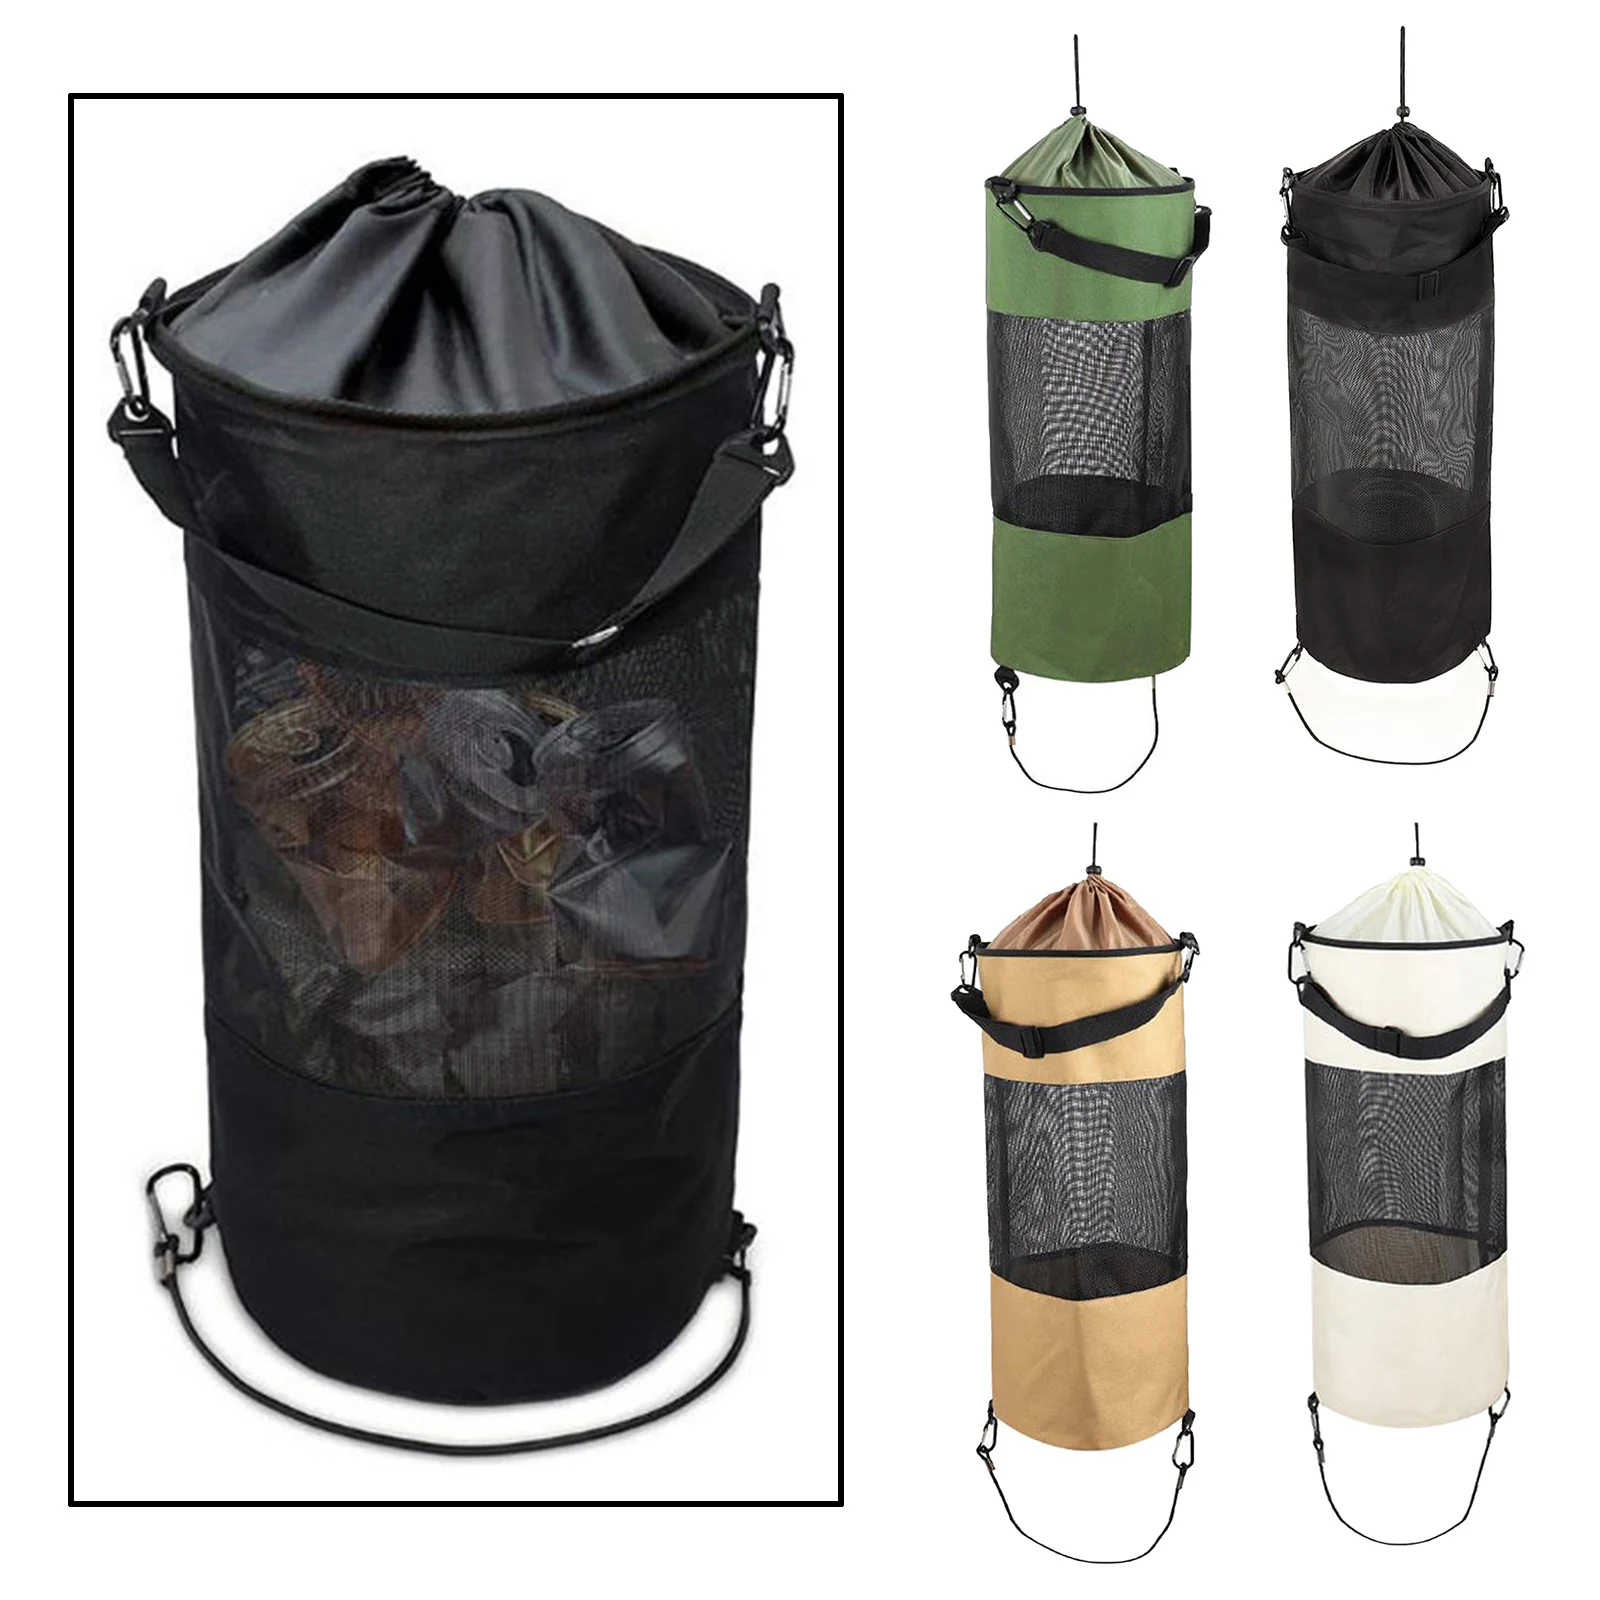 Boat Trash Bag Portable Outdoor Mesh Trash Bag for Your Boat, Kayak, or Camper Lightweight & Large Capacity Bin Bag